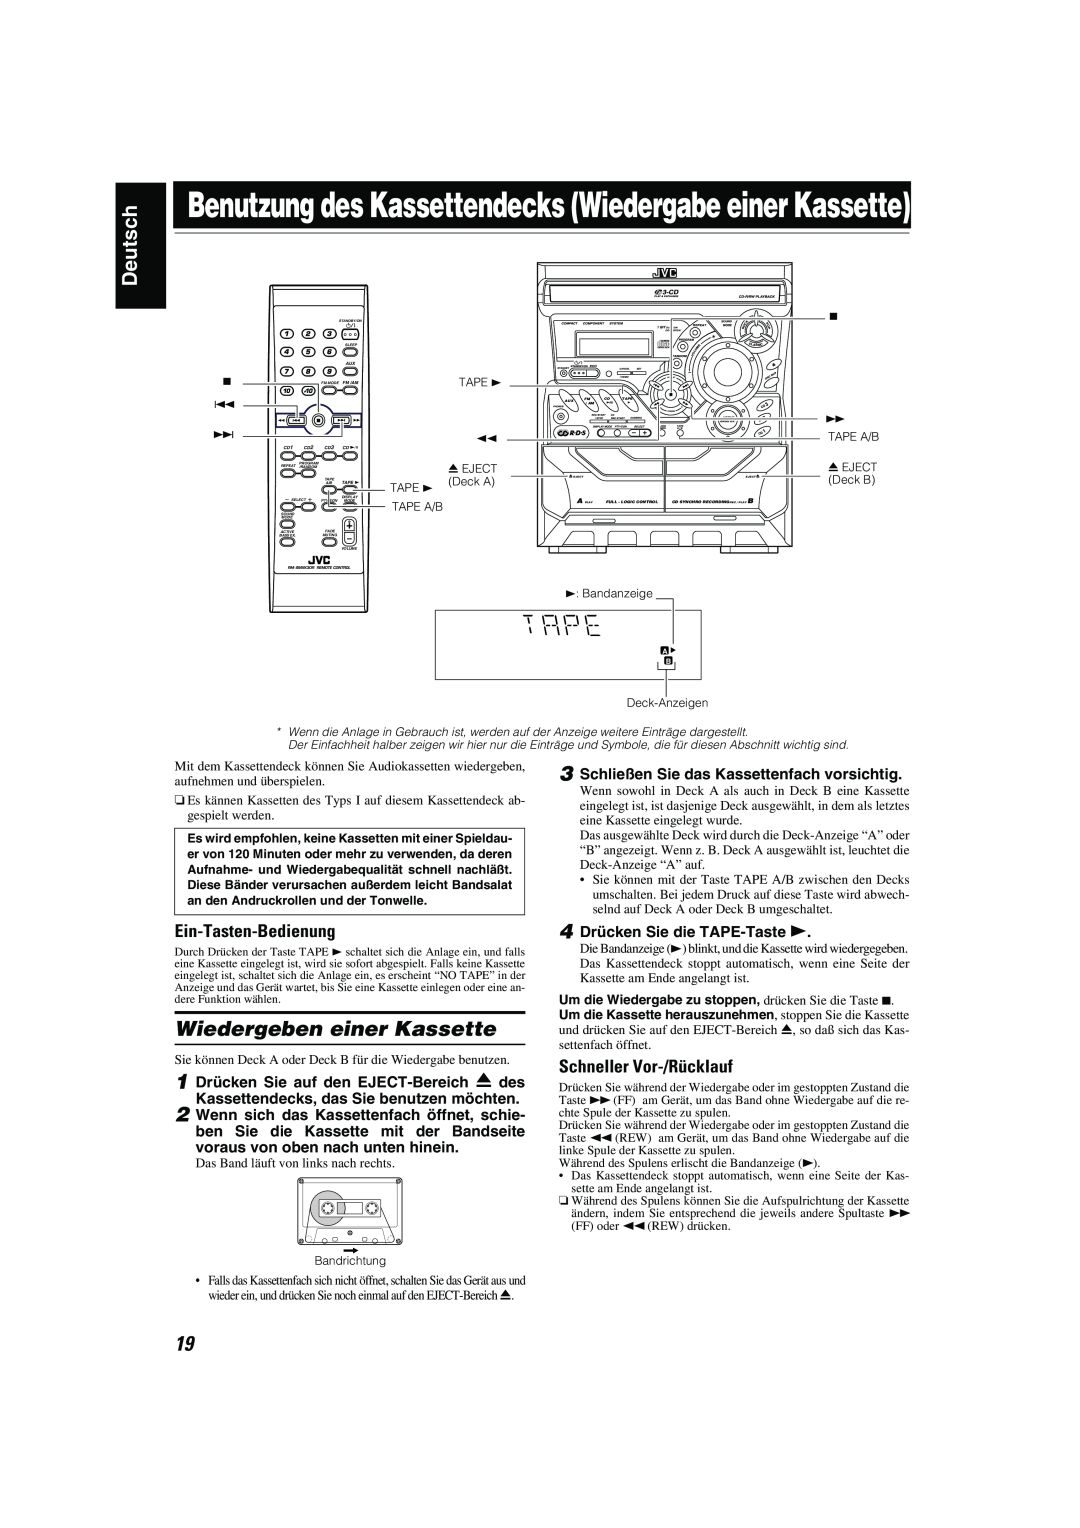 JVC CA-MXK10R manual Wiedergeben einer Kassette, Skip, Schneller Vor-/Rücklauf, Disc, Phones, Deutsch, Tuning 